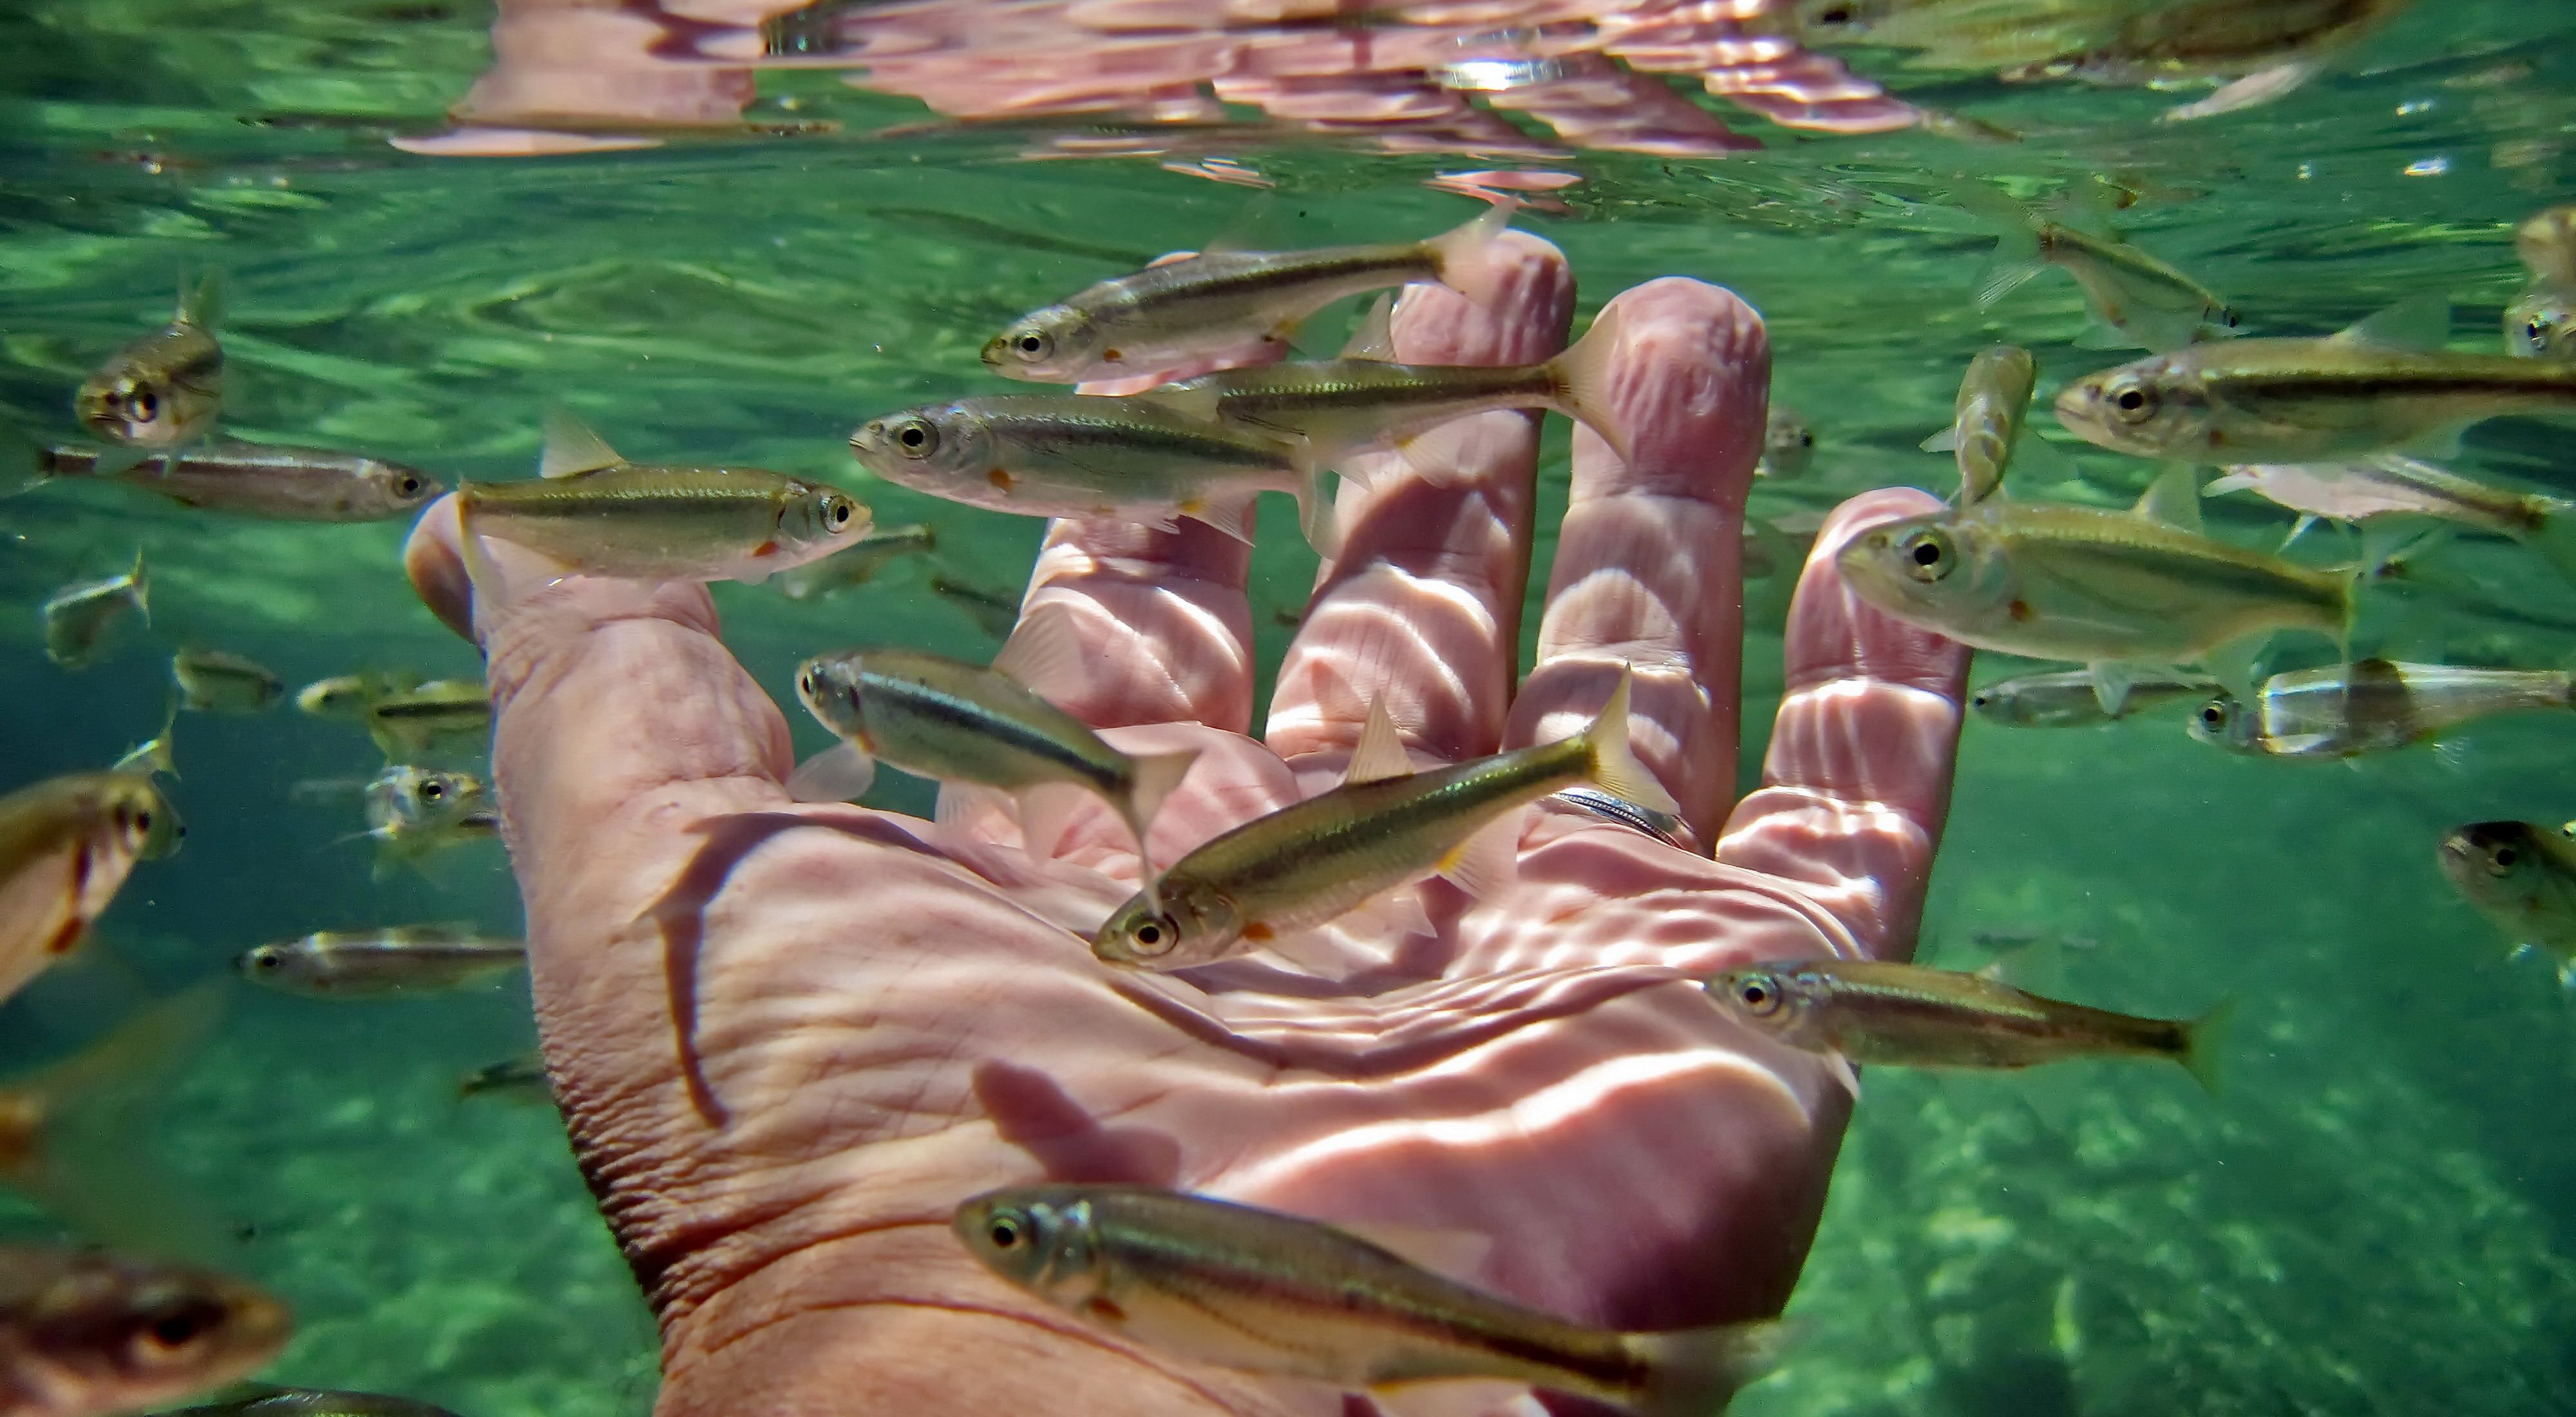 Fish swimming around a hand